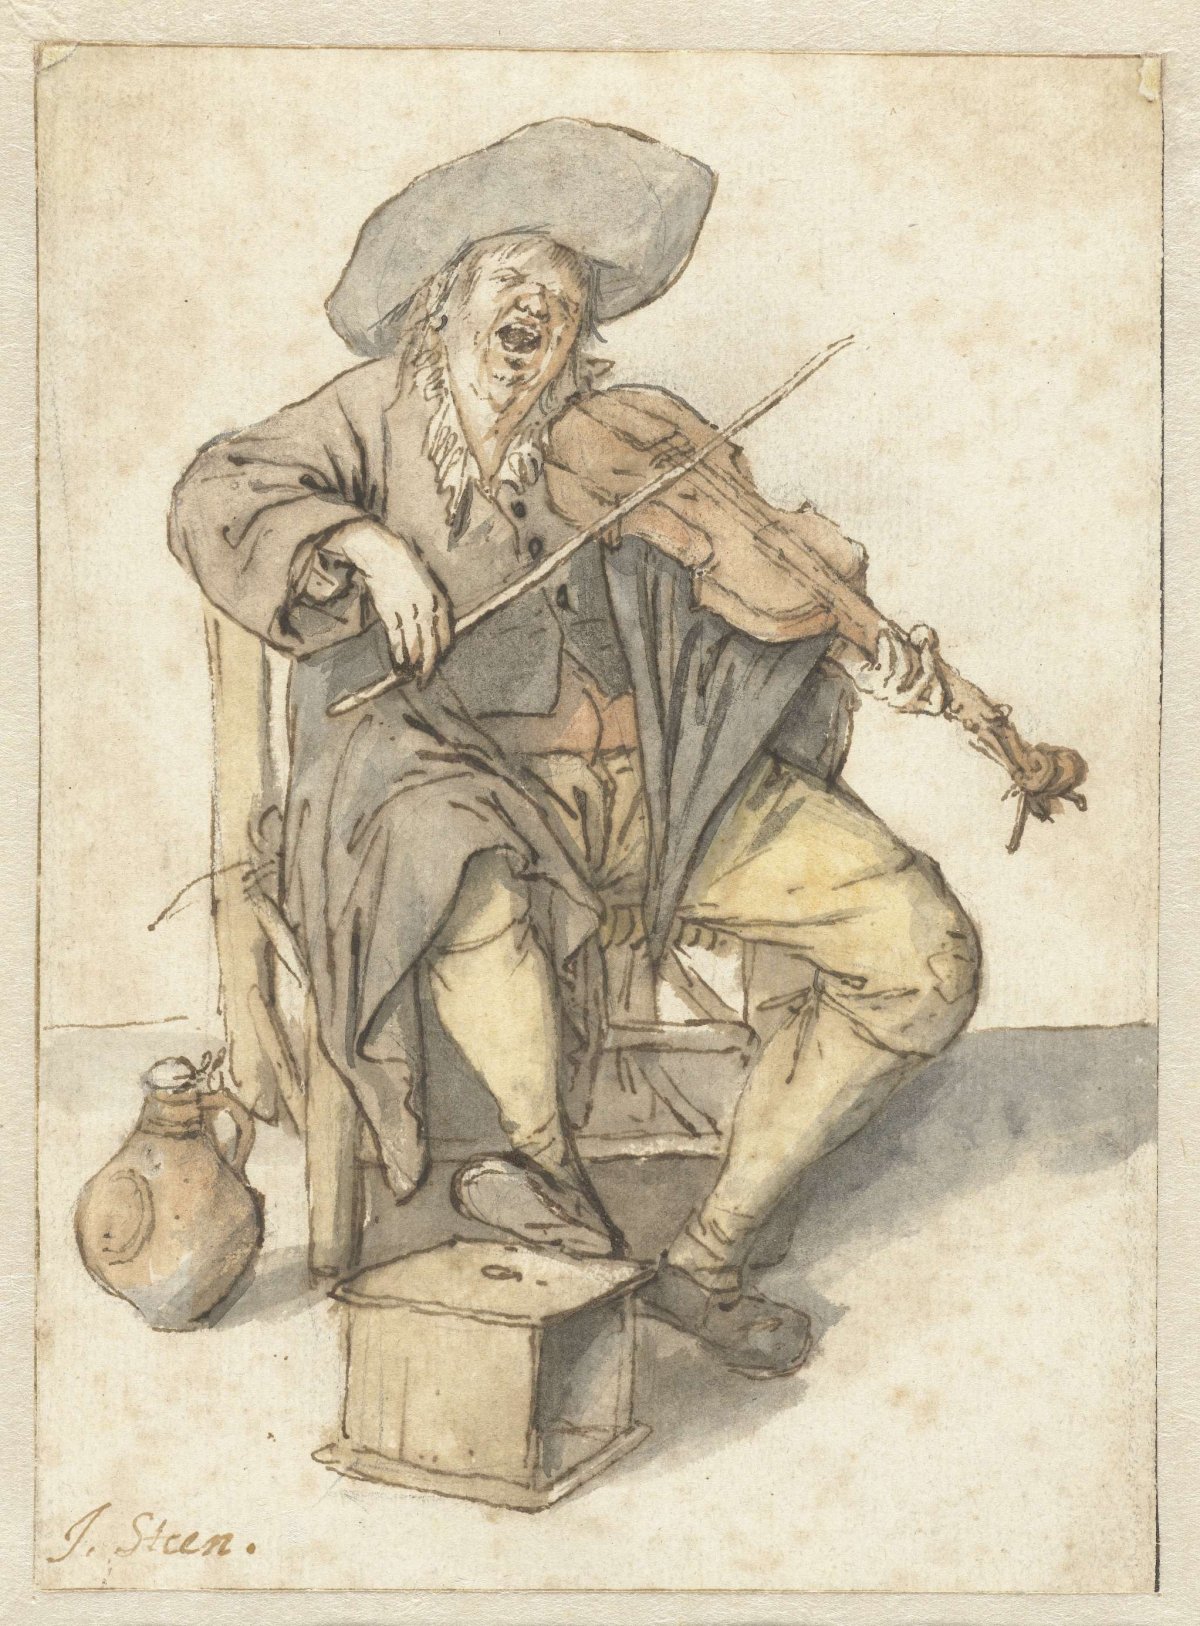 Zingende vioolspeler, Jan Havicksz. Steen, 1636 - 1679